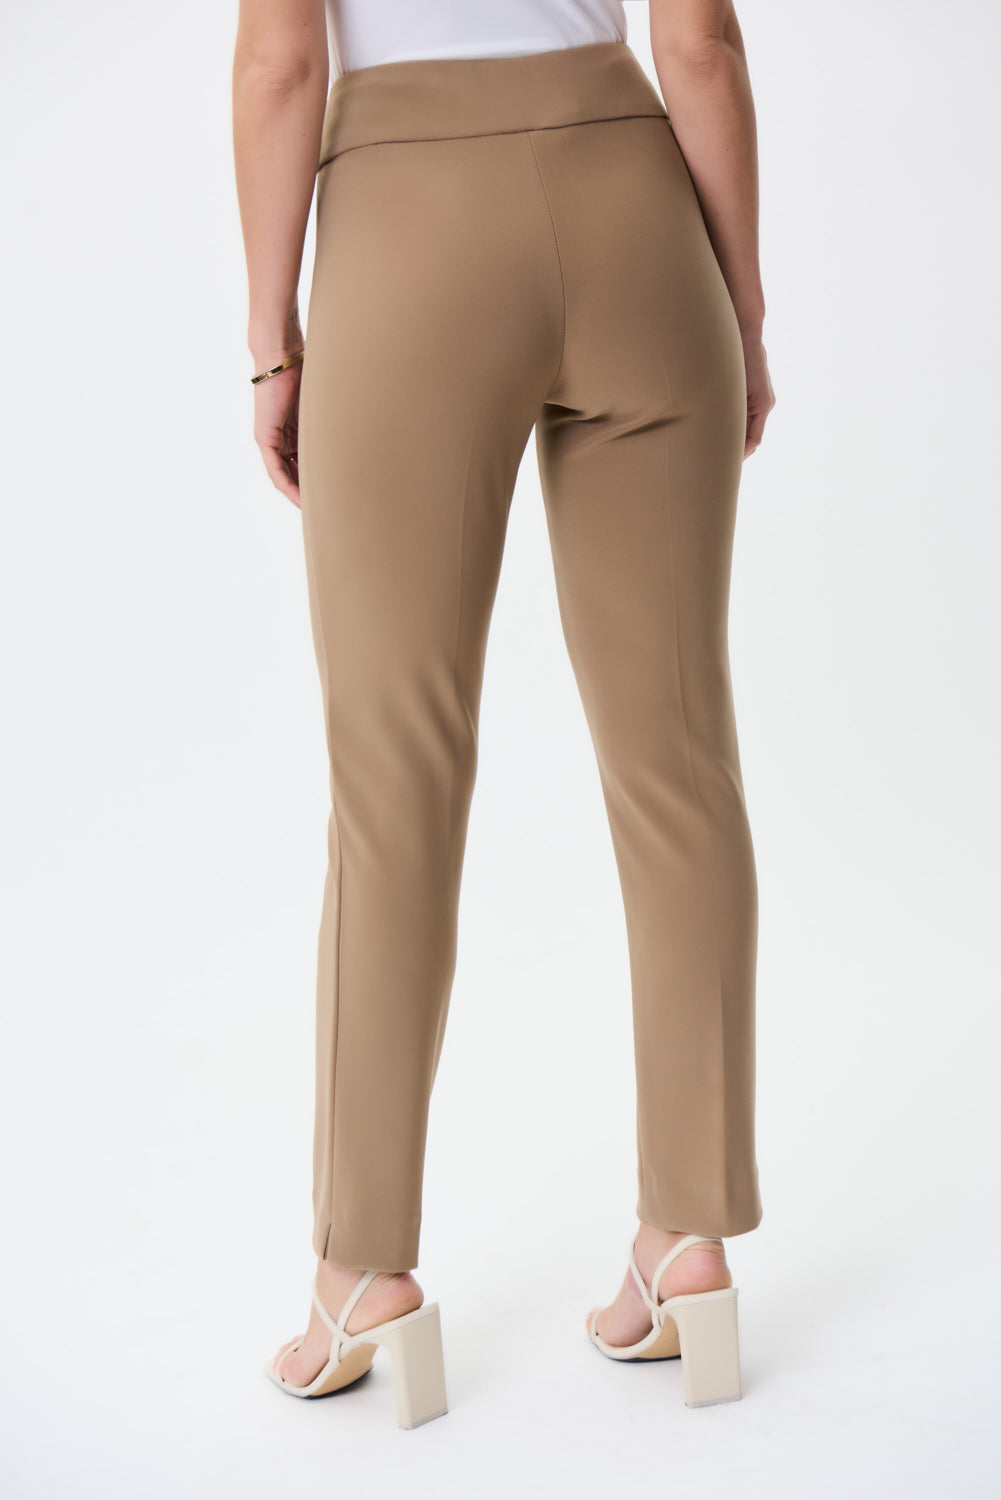 Joseph Ribkoff Contour Slim Fit Pant Style 144092 Sale 